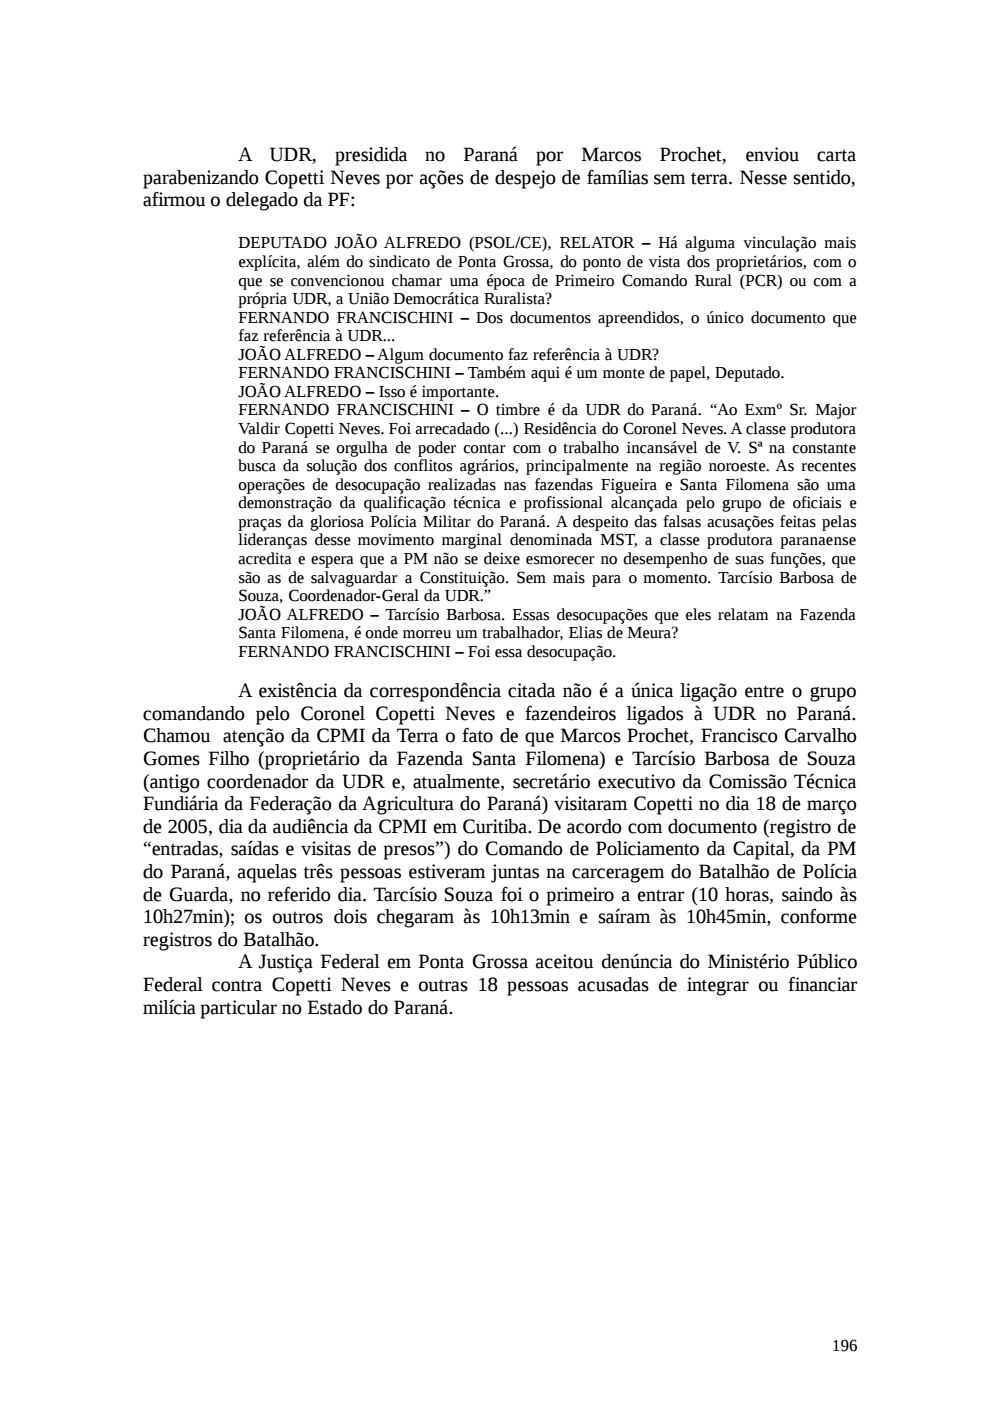 Page 196 from Relatório final da comissão